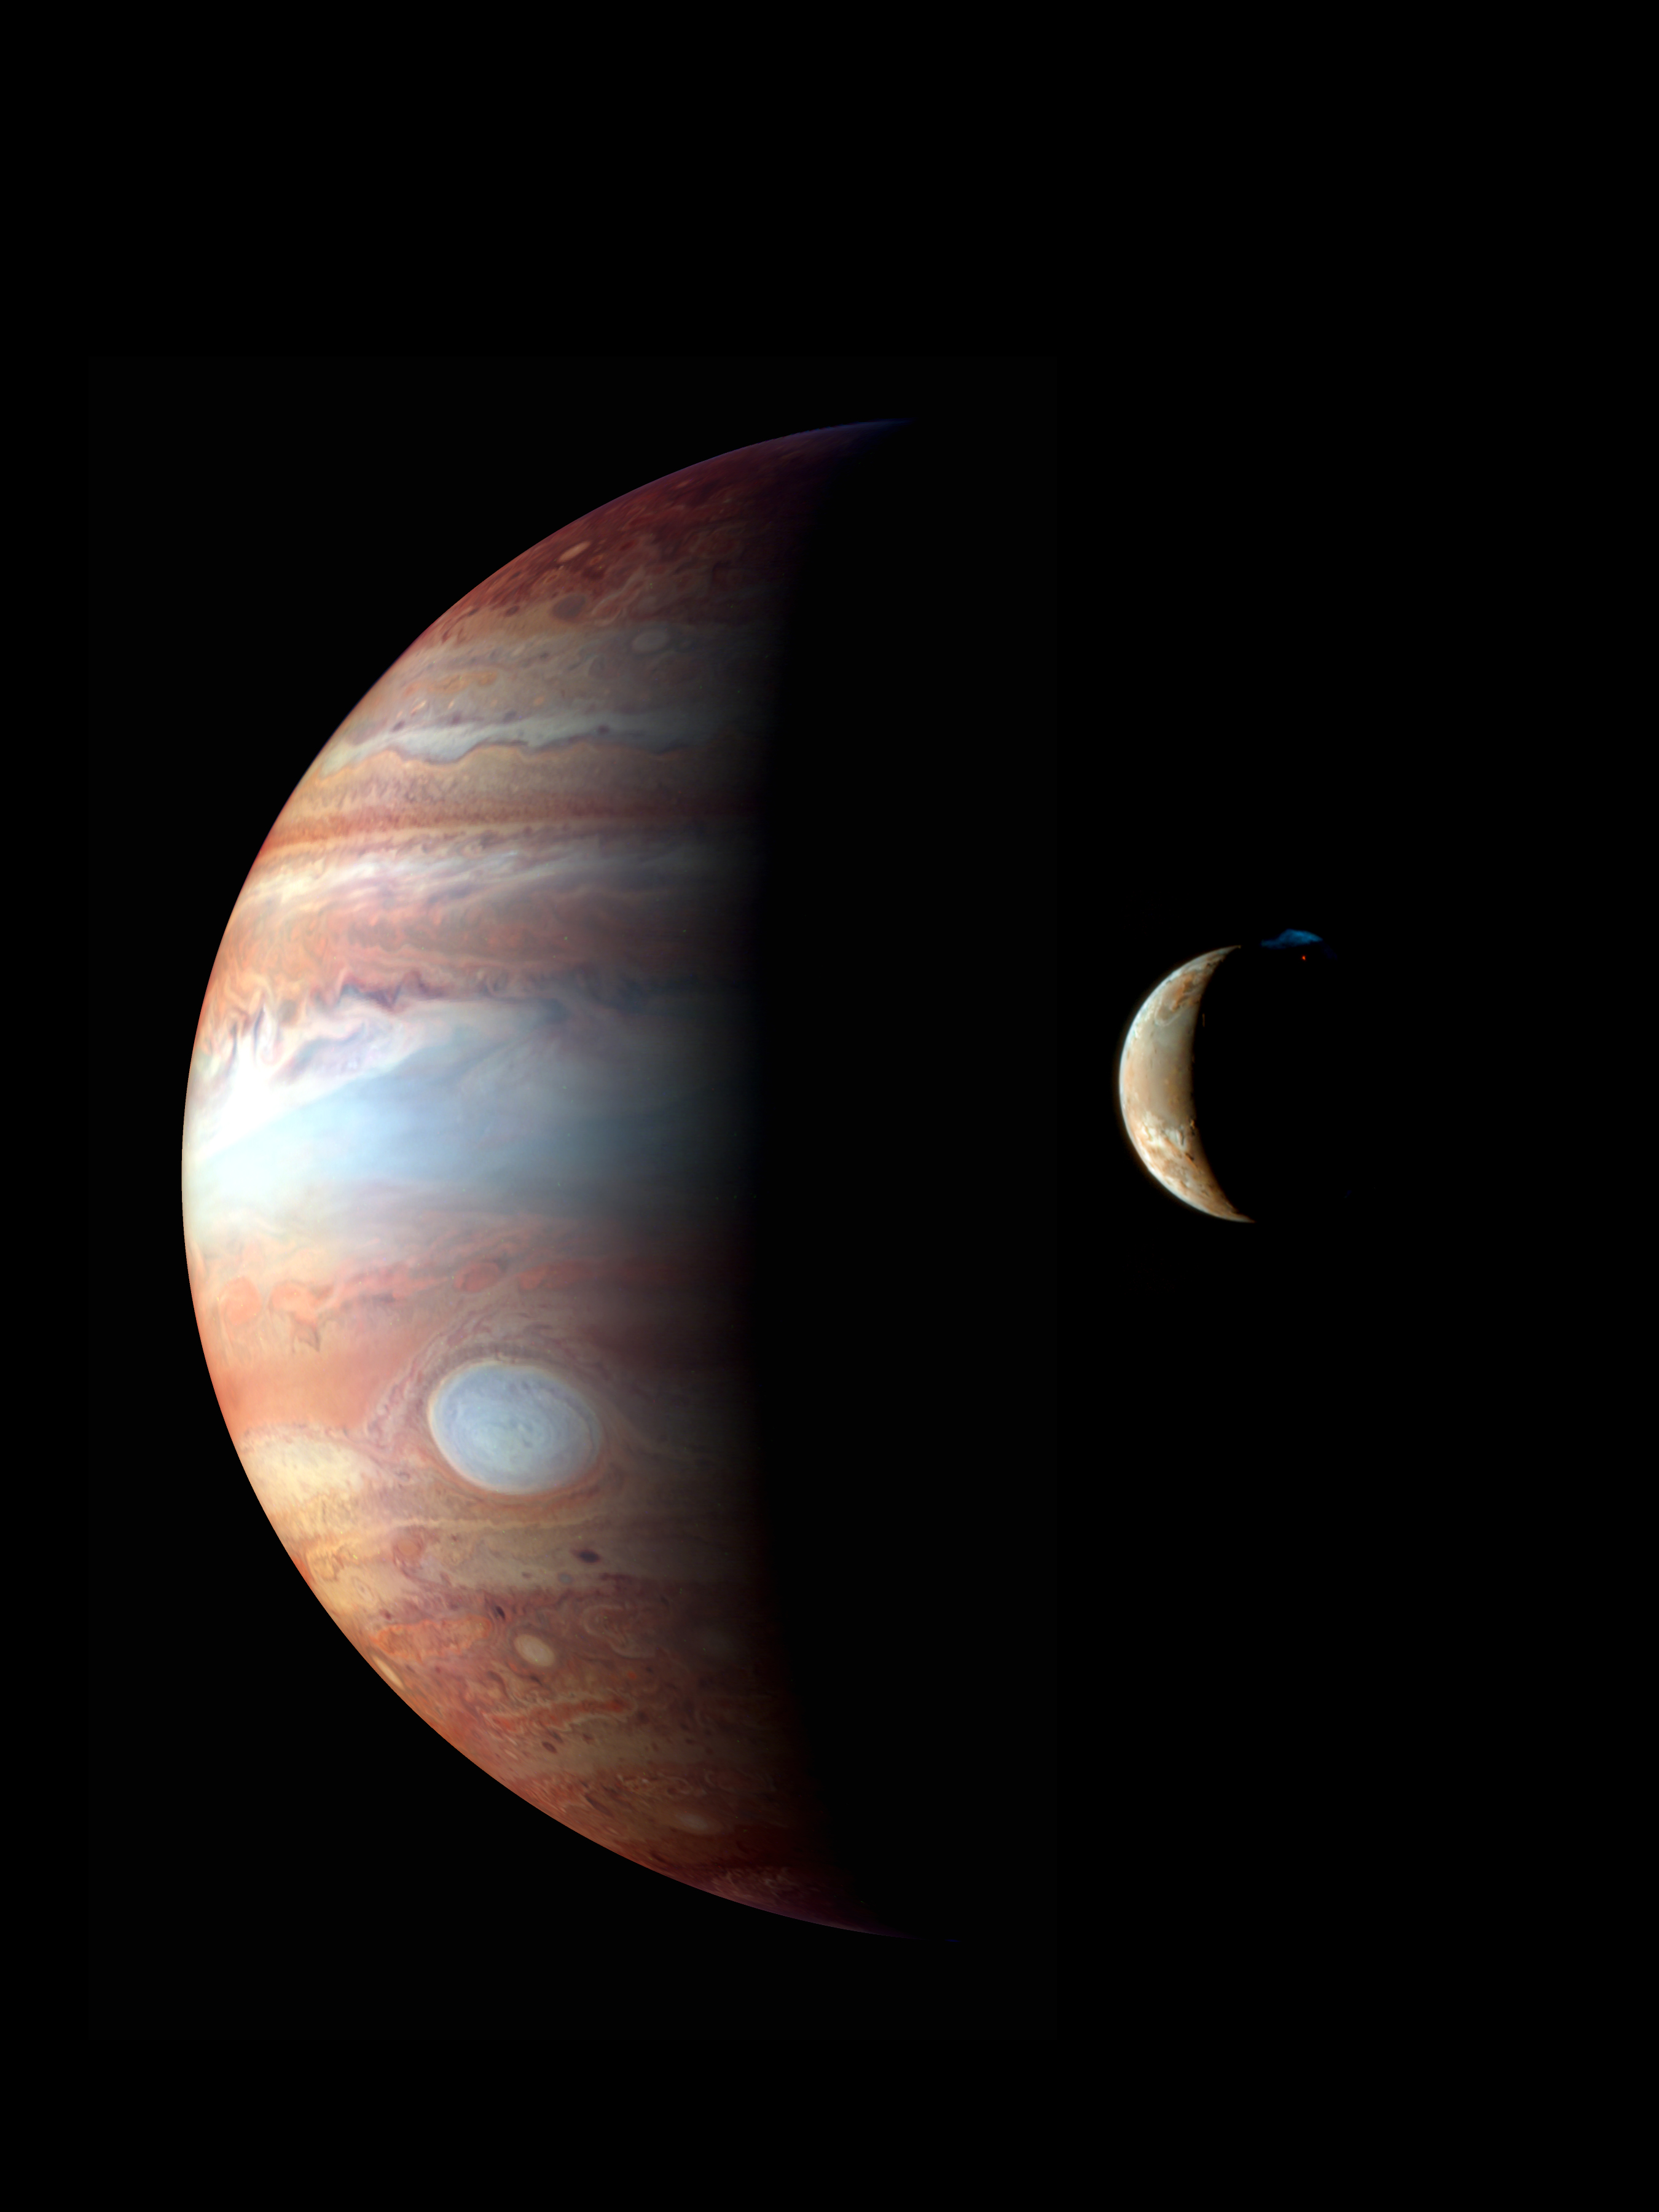 A New Horizons űrszonda felvételeiből készített montázson a Jupiter és az Io hold látható. A Jupiterről közeli-infravörös tartományban készült felvétel feltárja a felhőzet részleteit, az Io holdról készült valós színes képen pedig egy vulkánkitörés figyelhető meg. Forrás: NASA/JHUAPL/SWRI